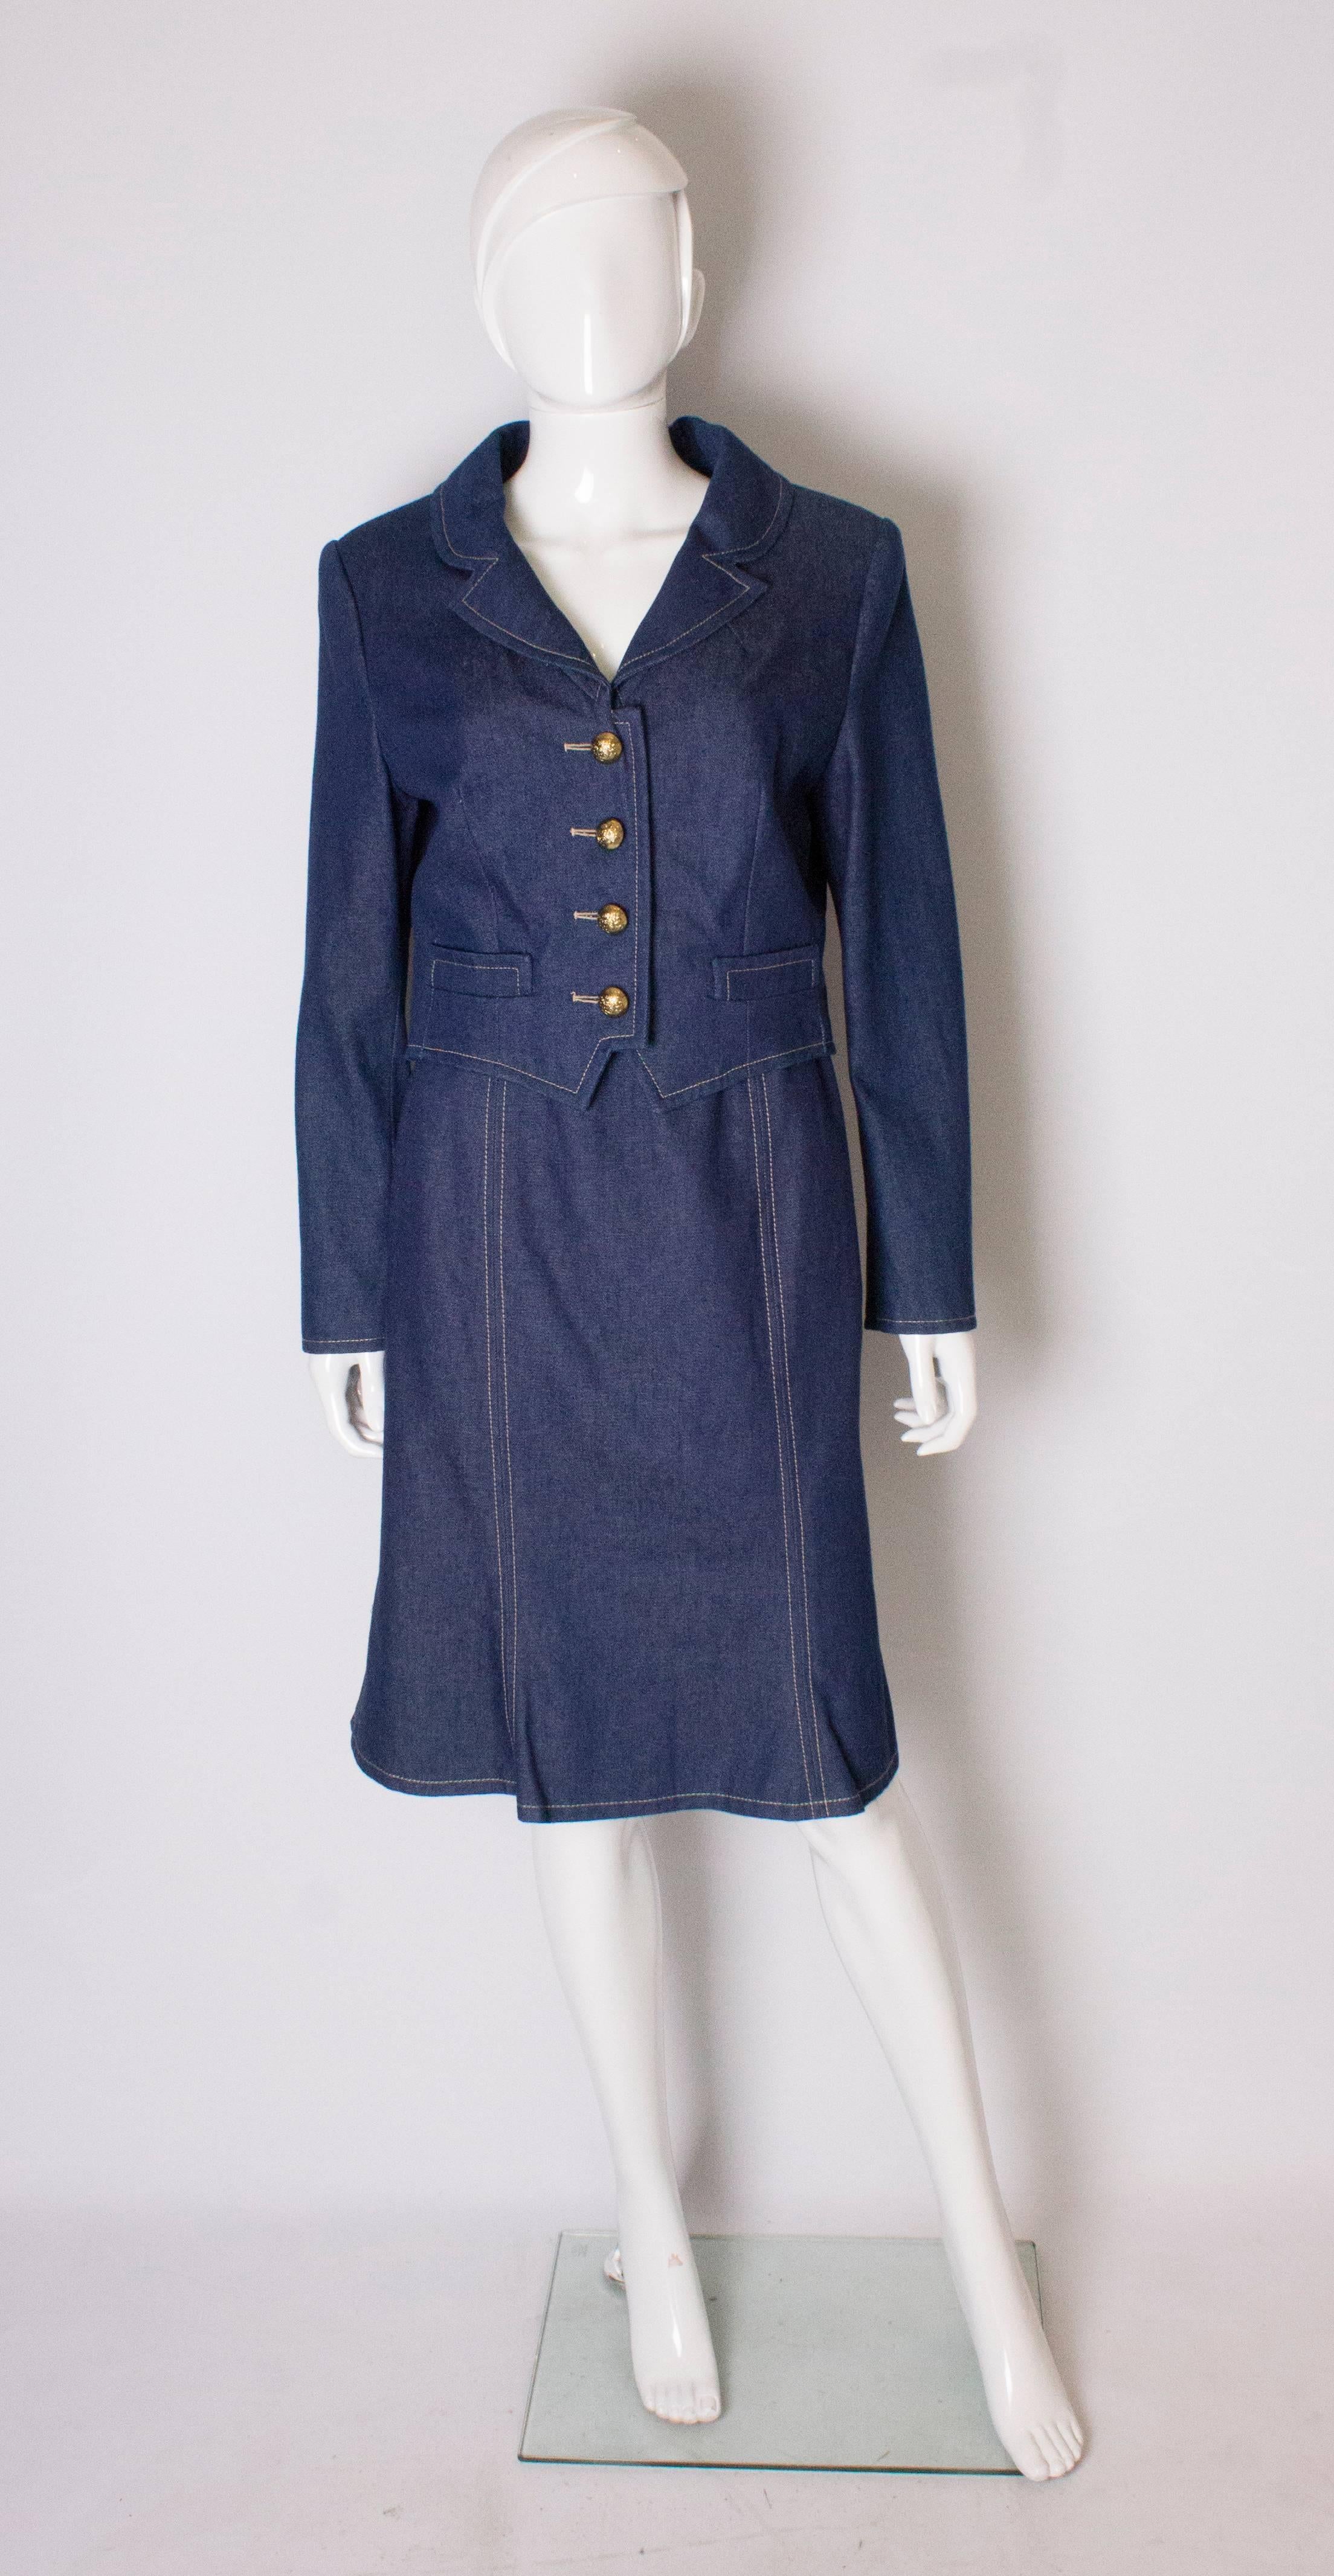 Un tailleur jupe chic du designer britannique Donald Campbell.  Dans un tissu denim bleu, la veste a un col en V avec une ouverture à 4 boutons, et 3 boutons sur chaque poignet, et est entièrement doublée. La jupe a une fermeture éclair centrale au